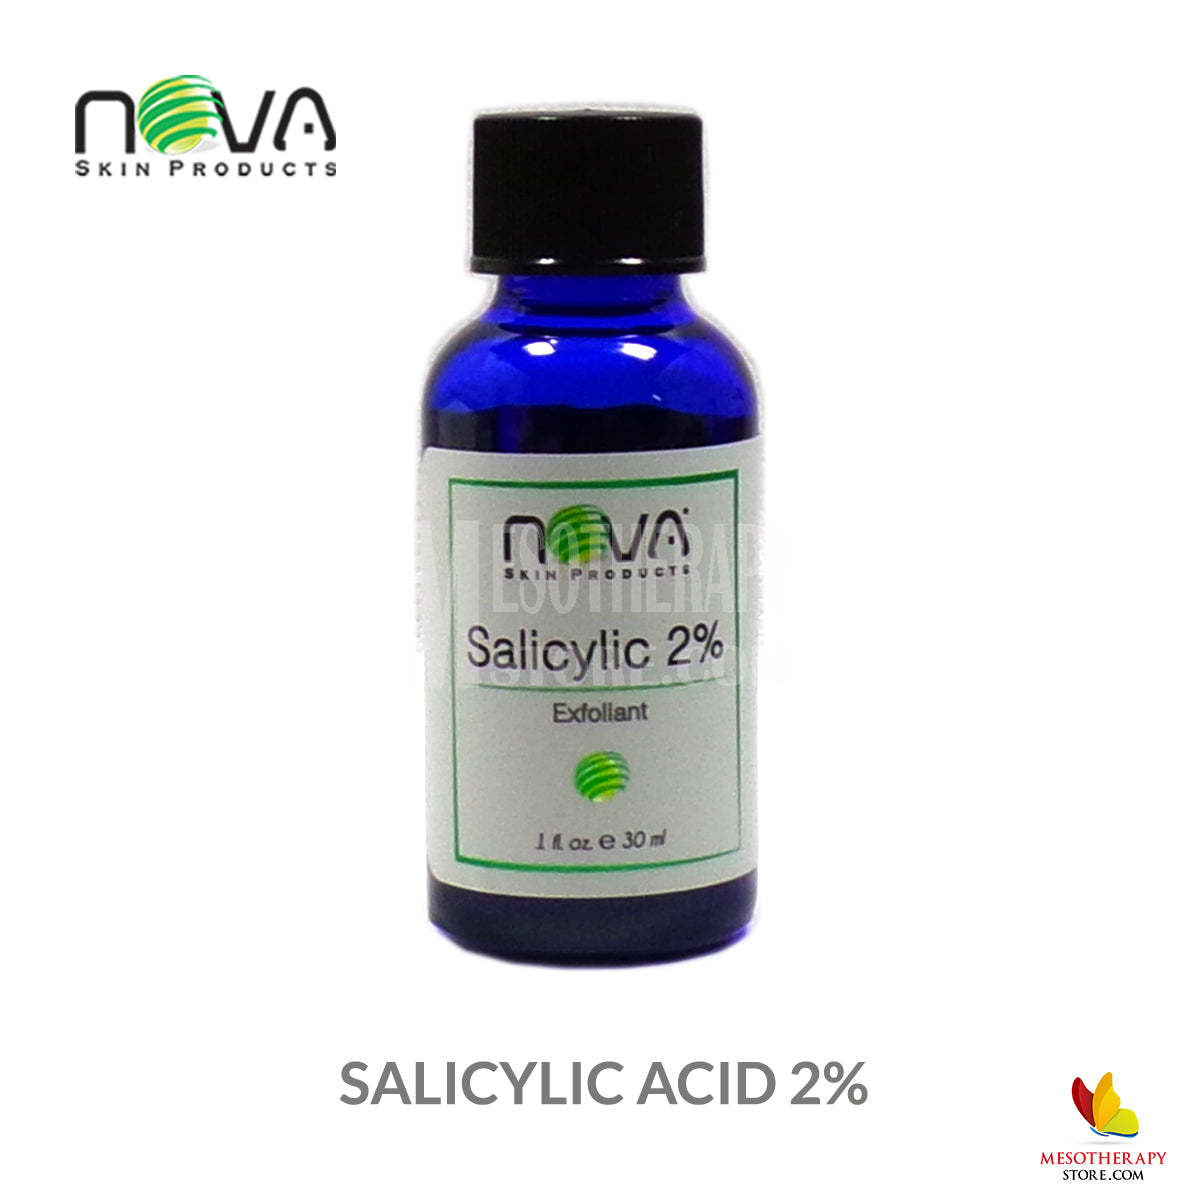 Primary image for Salicylic Acid 2% Exfoliant By Nova Skin